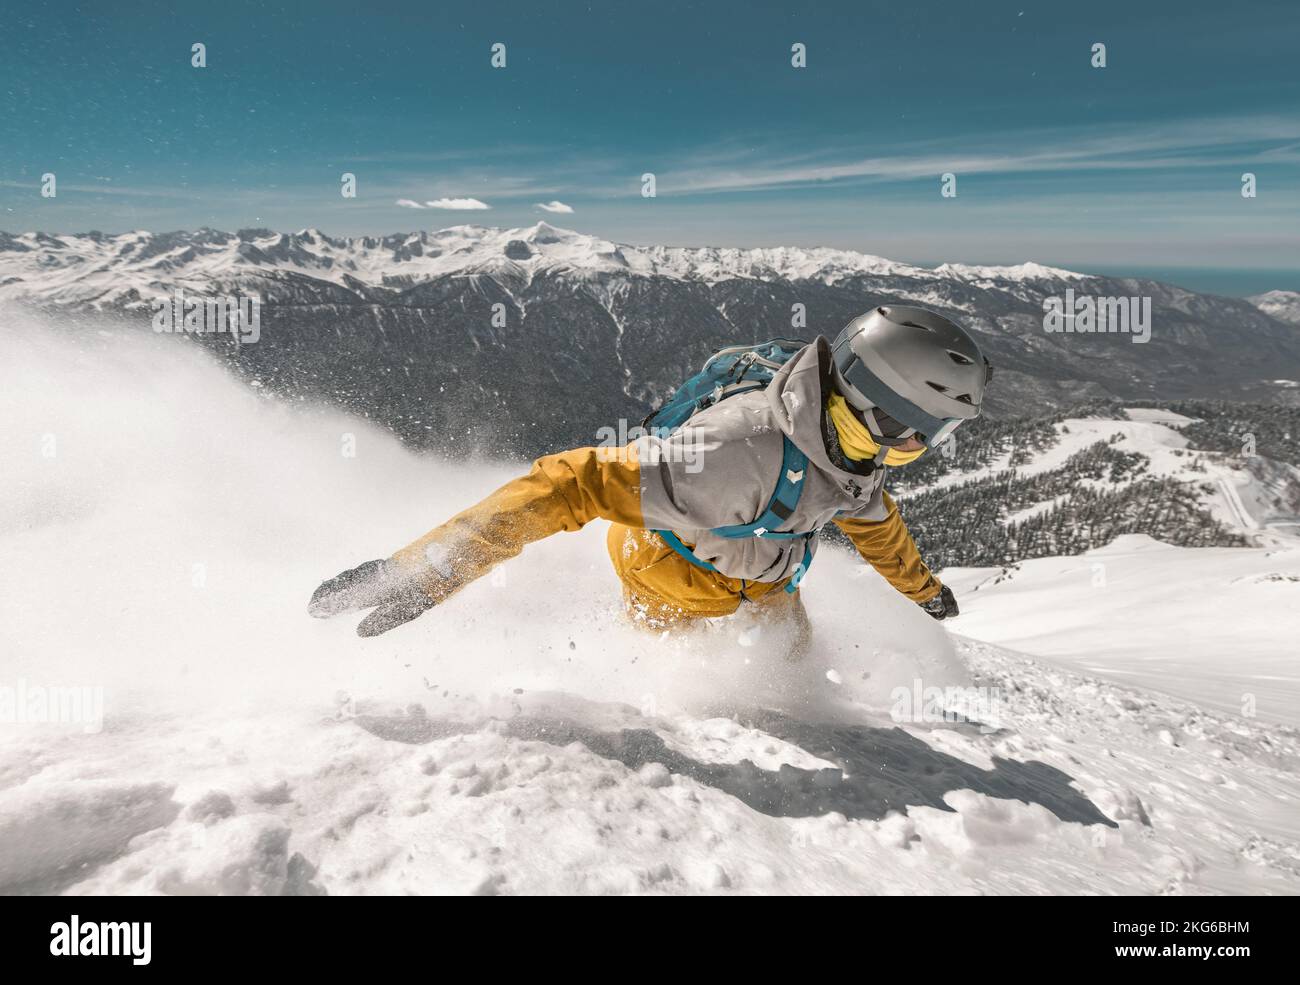 Primo piano foto del veloce snowboarder nella nuvola di neve in polvere sulle piste da sci Foto Stock